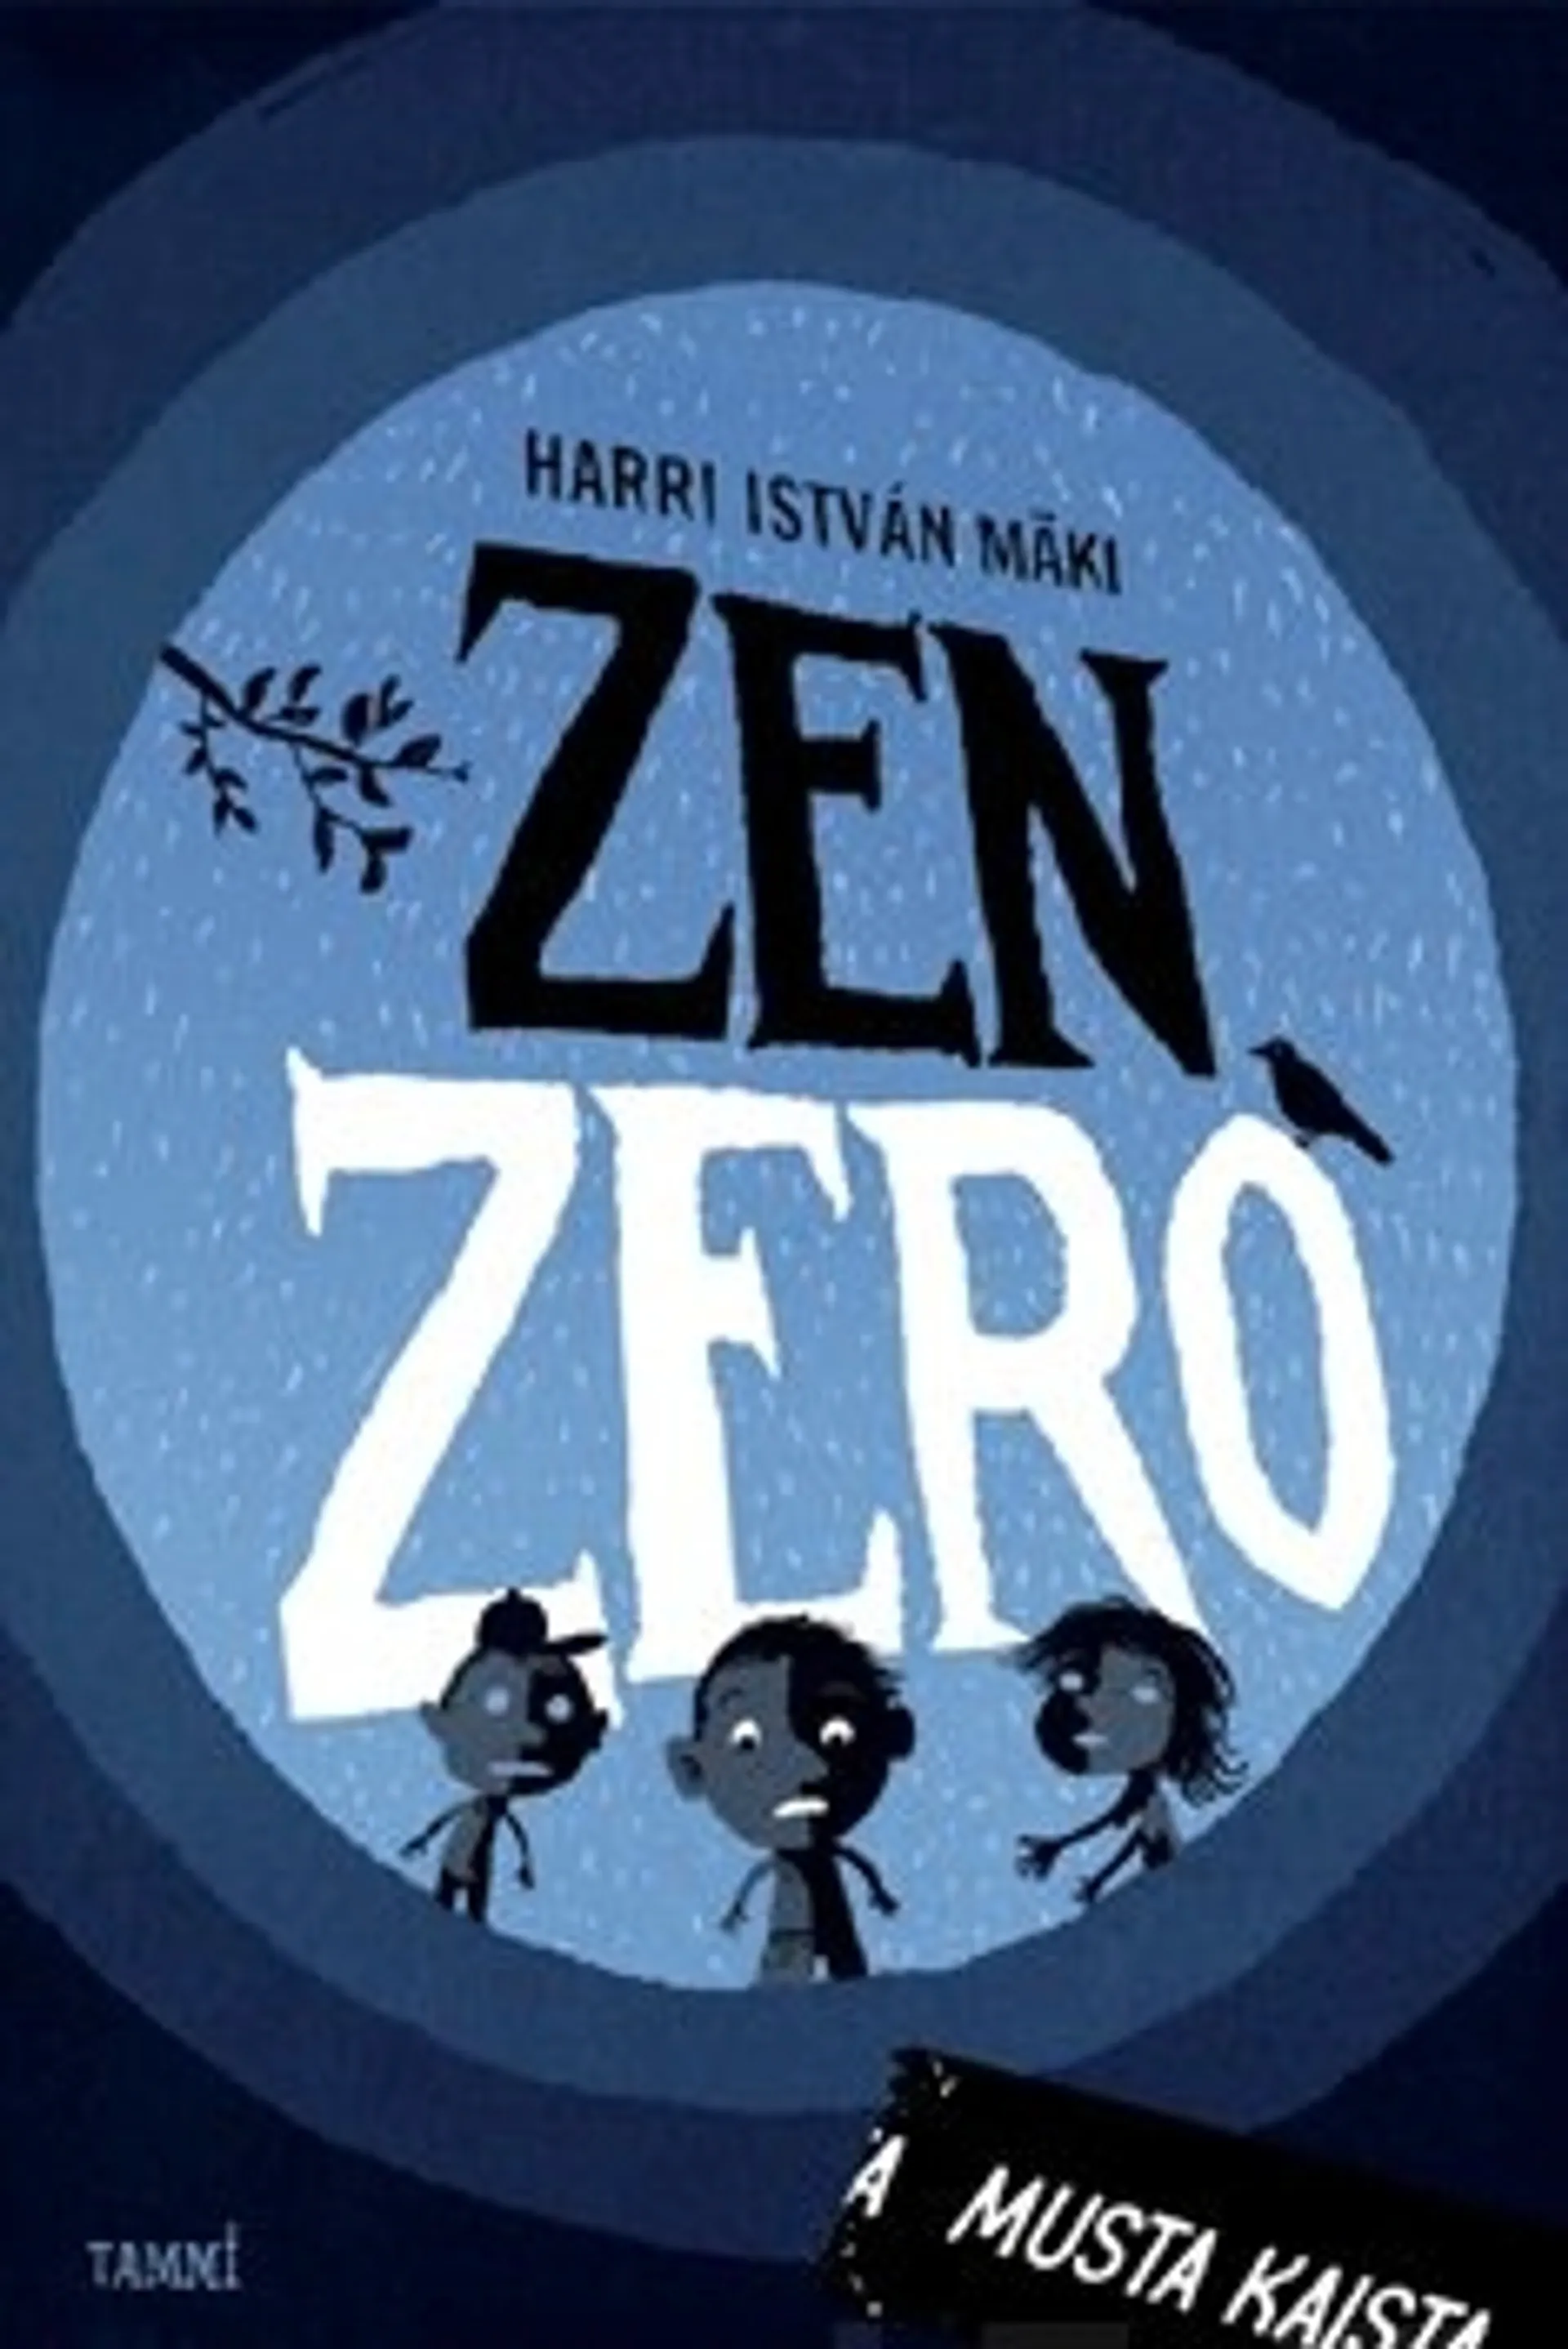 Zen Zero